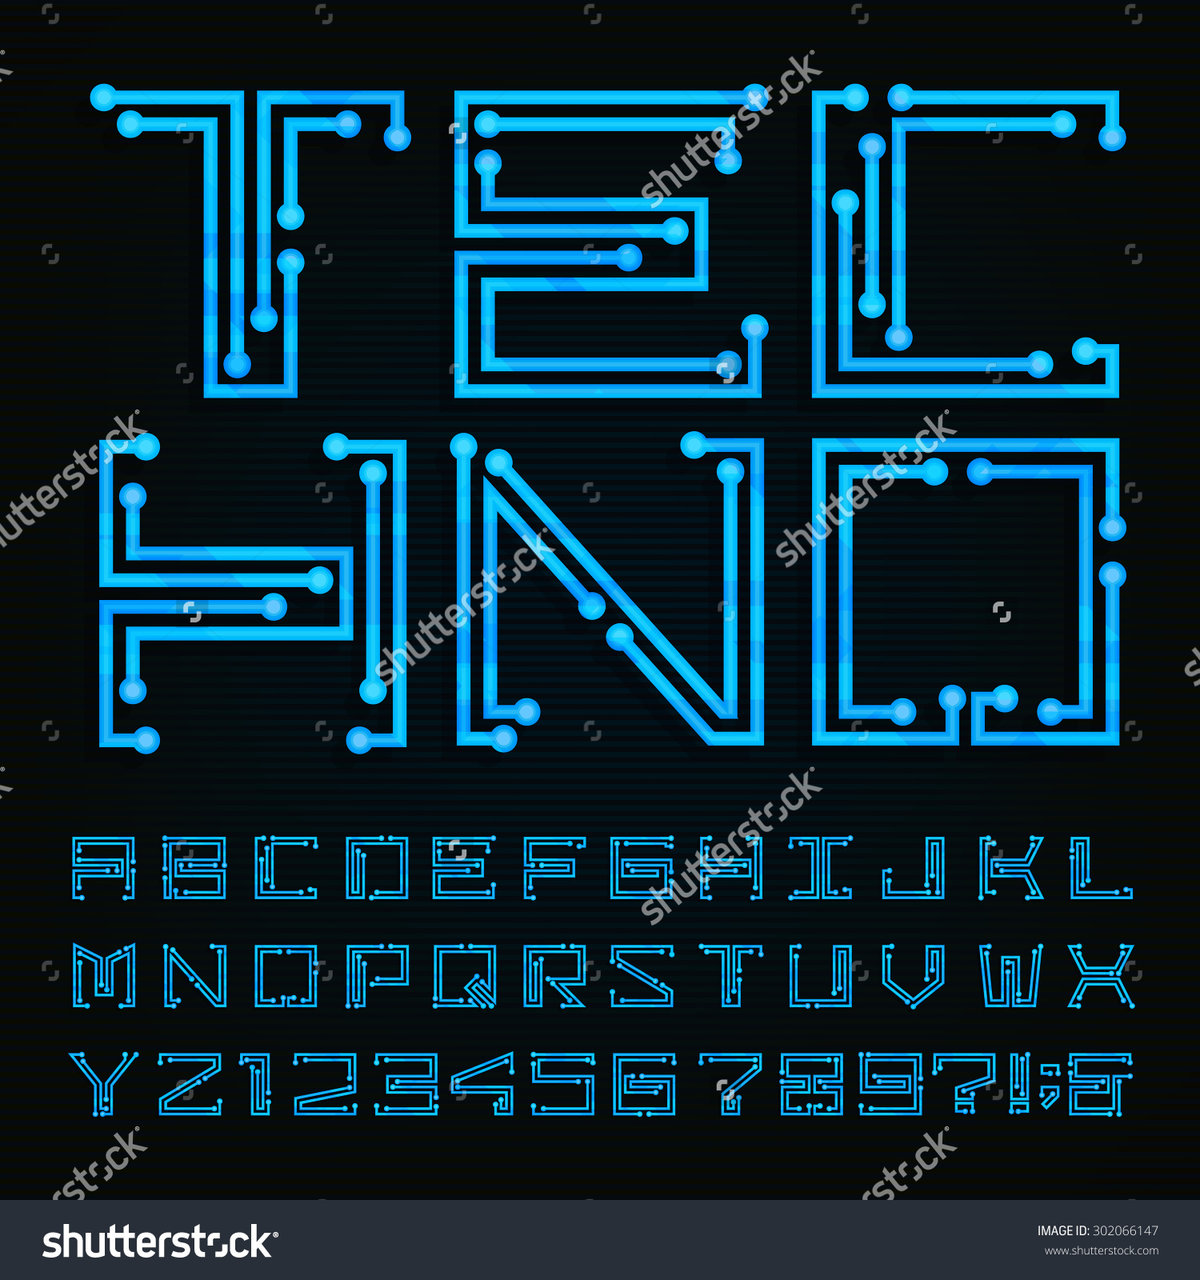 Cyberpunk free font фото 58